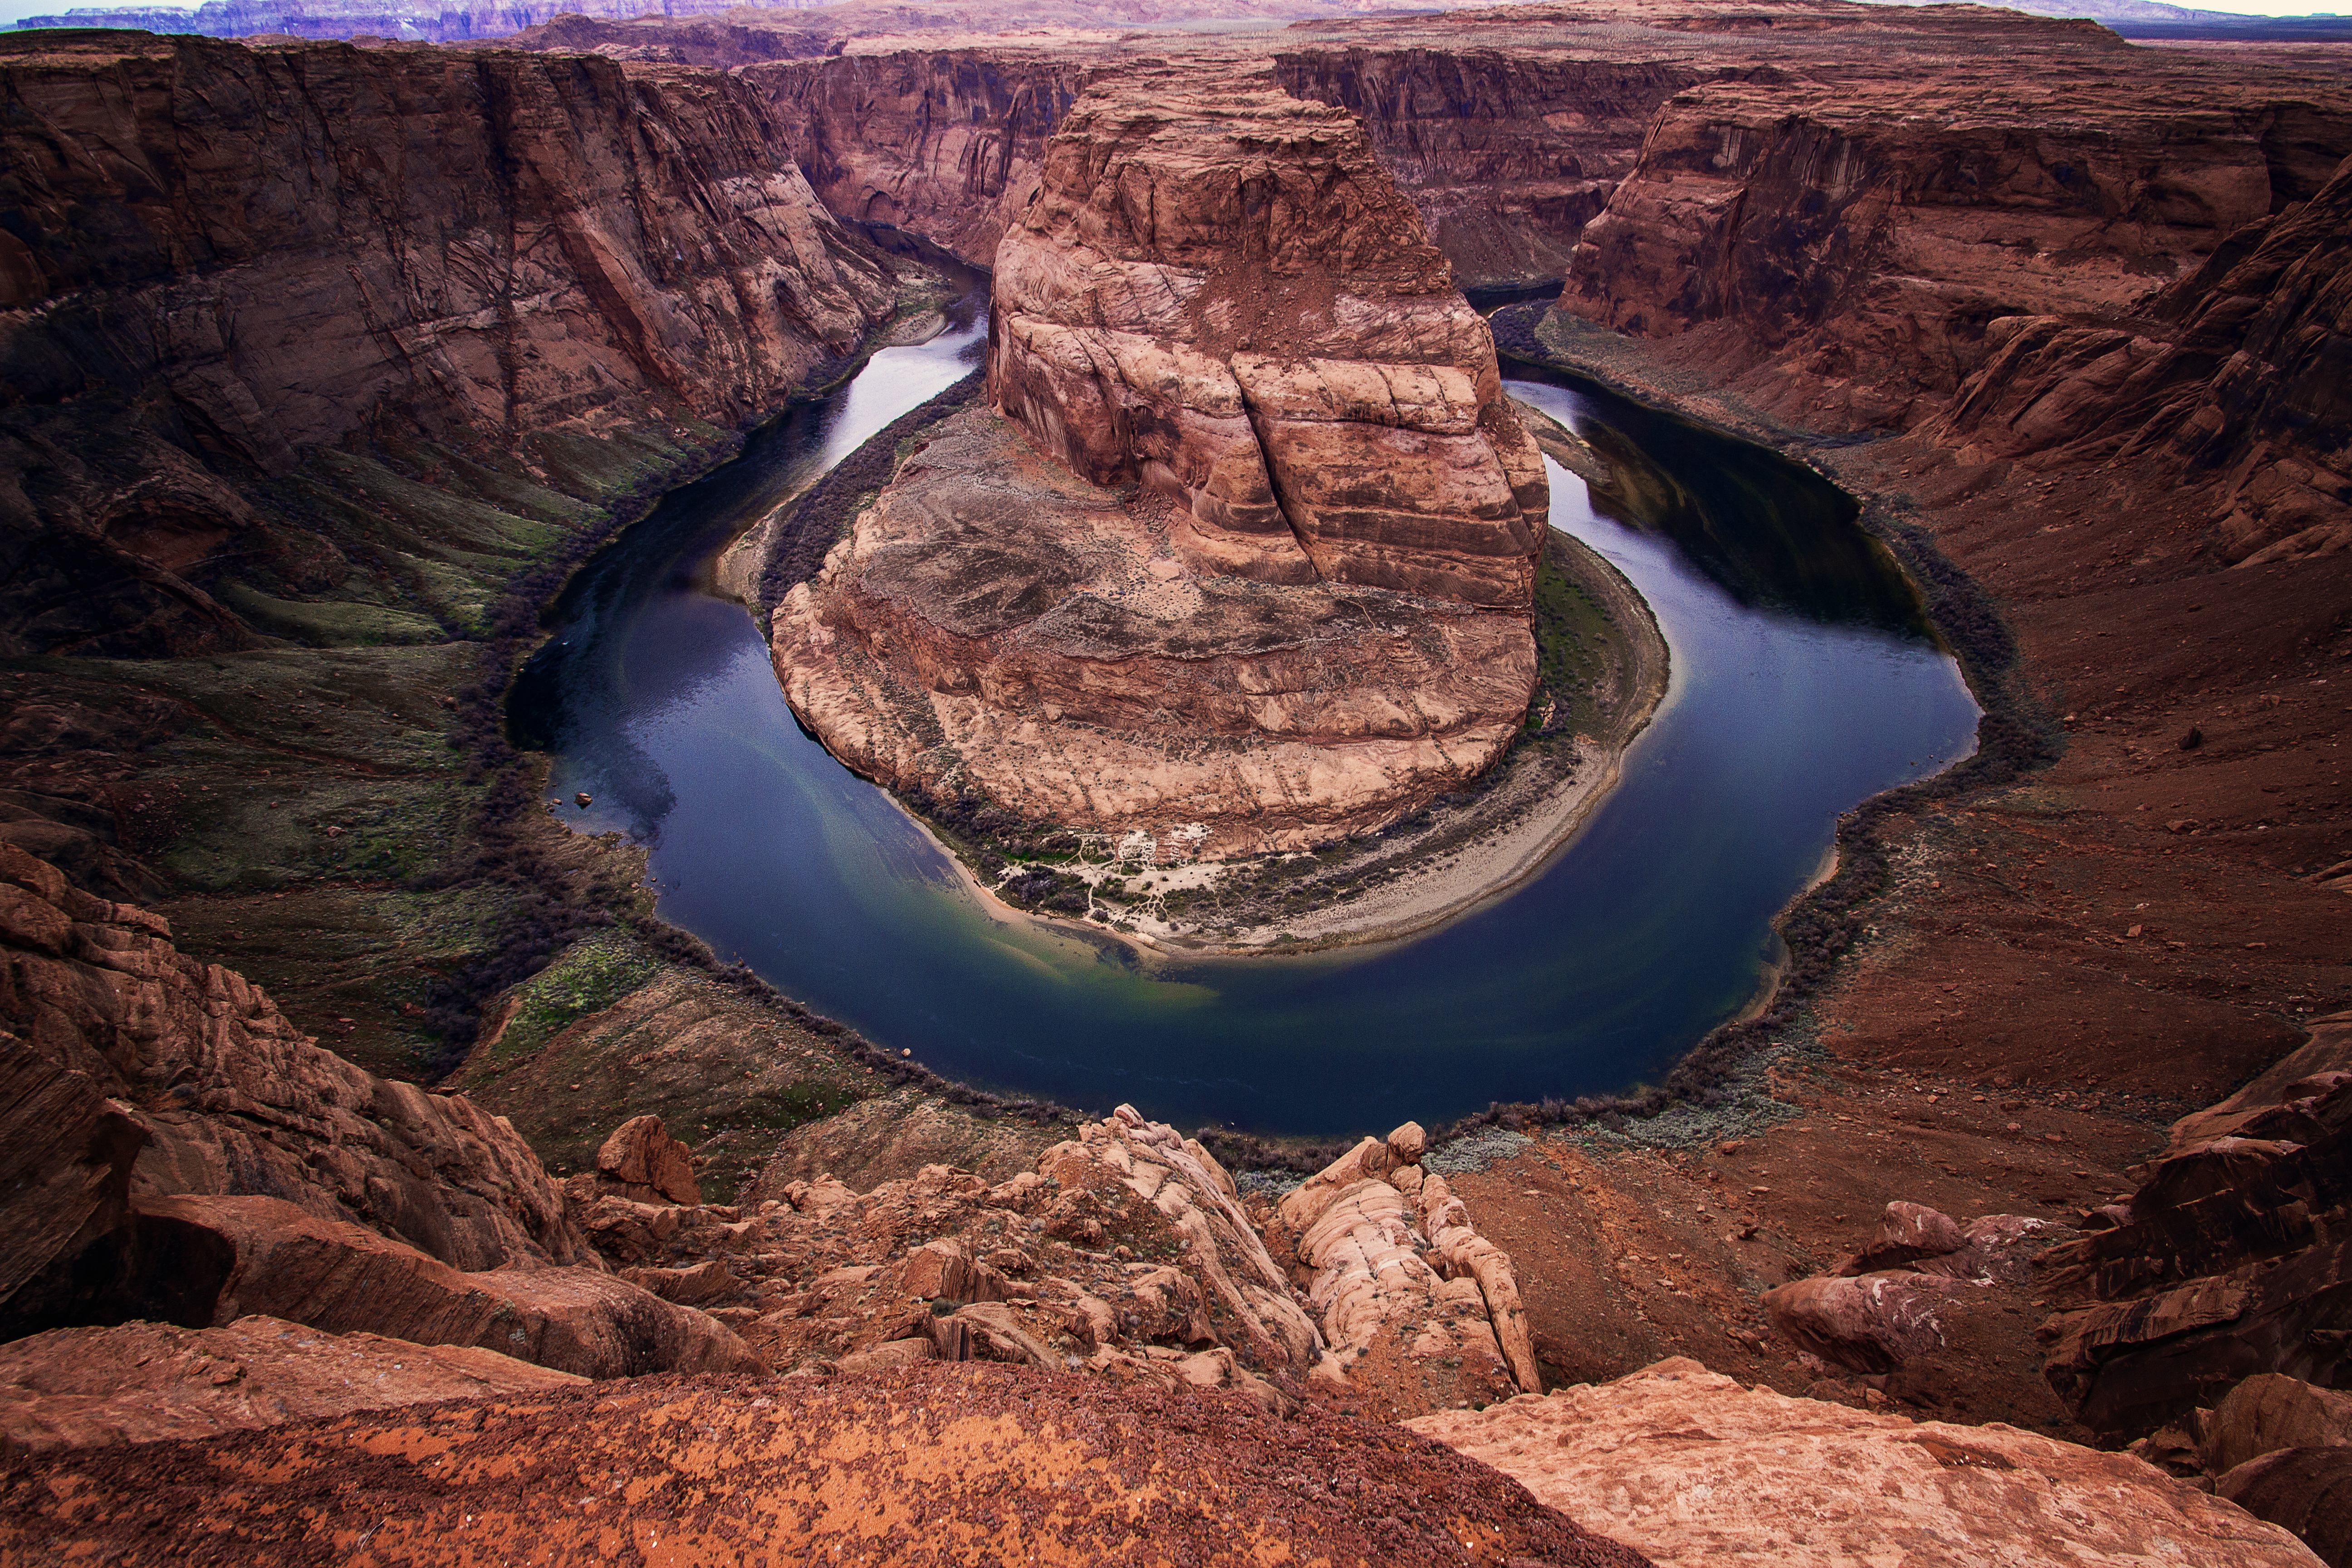 Скачать обои Река Колорадо на телефон бесплатно